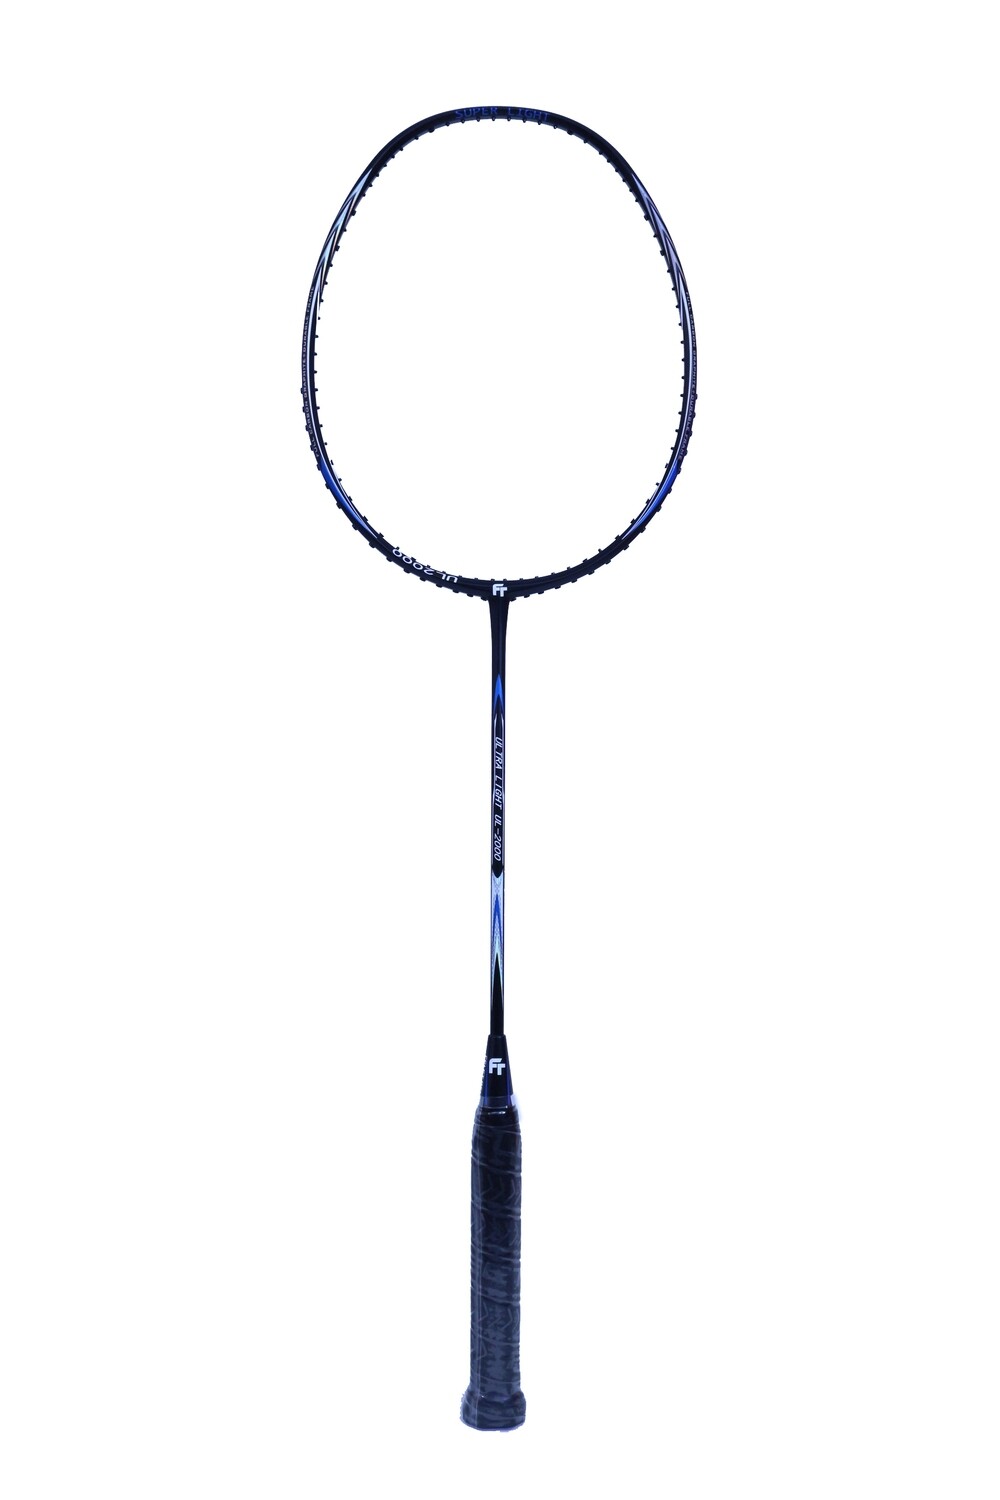 Fleet Ultra Light UL-2000 Black Badminton Racquet